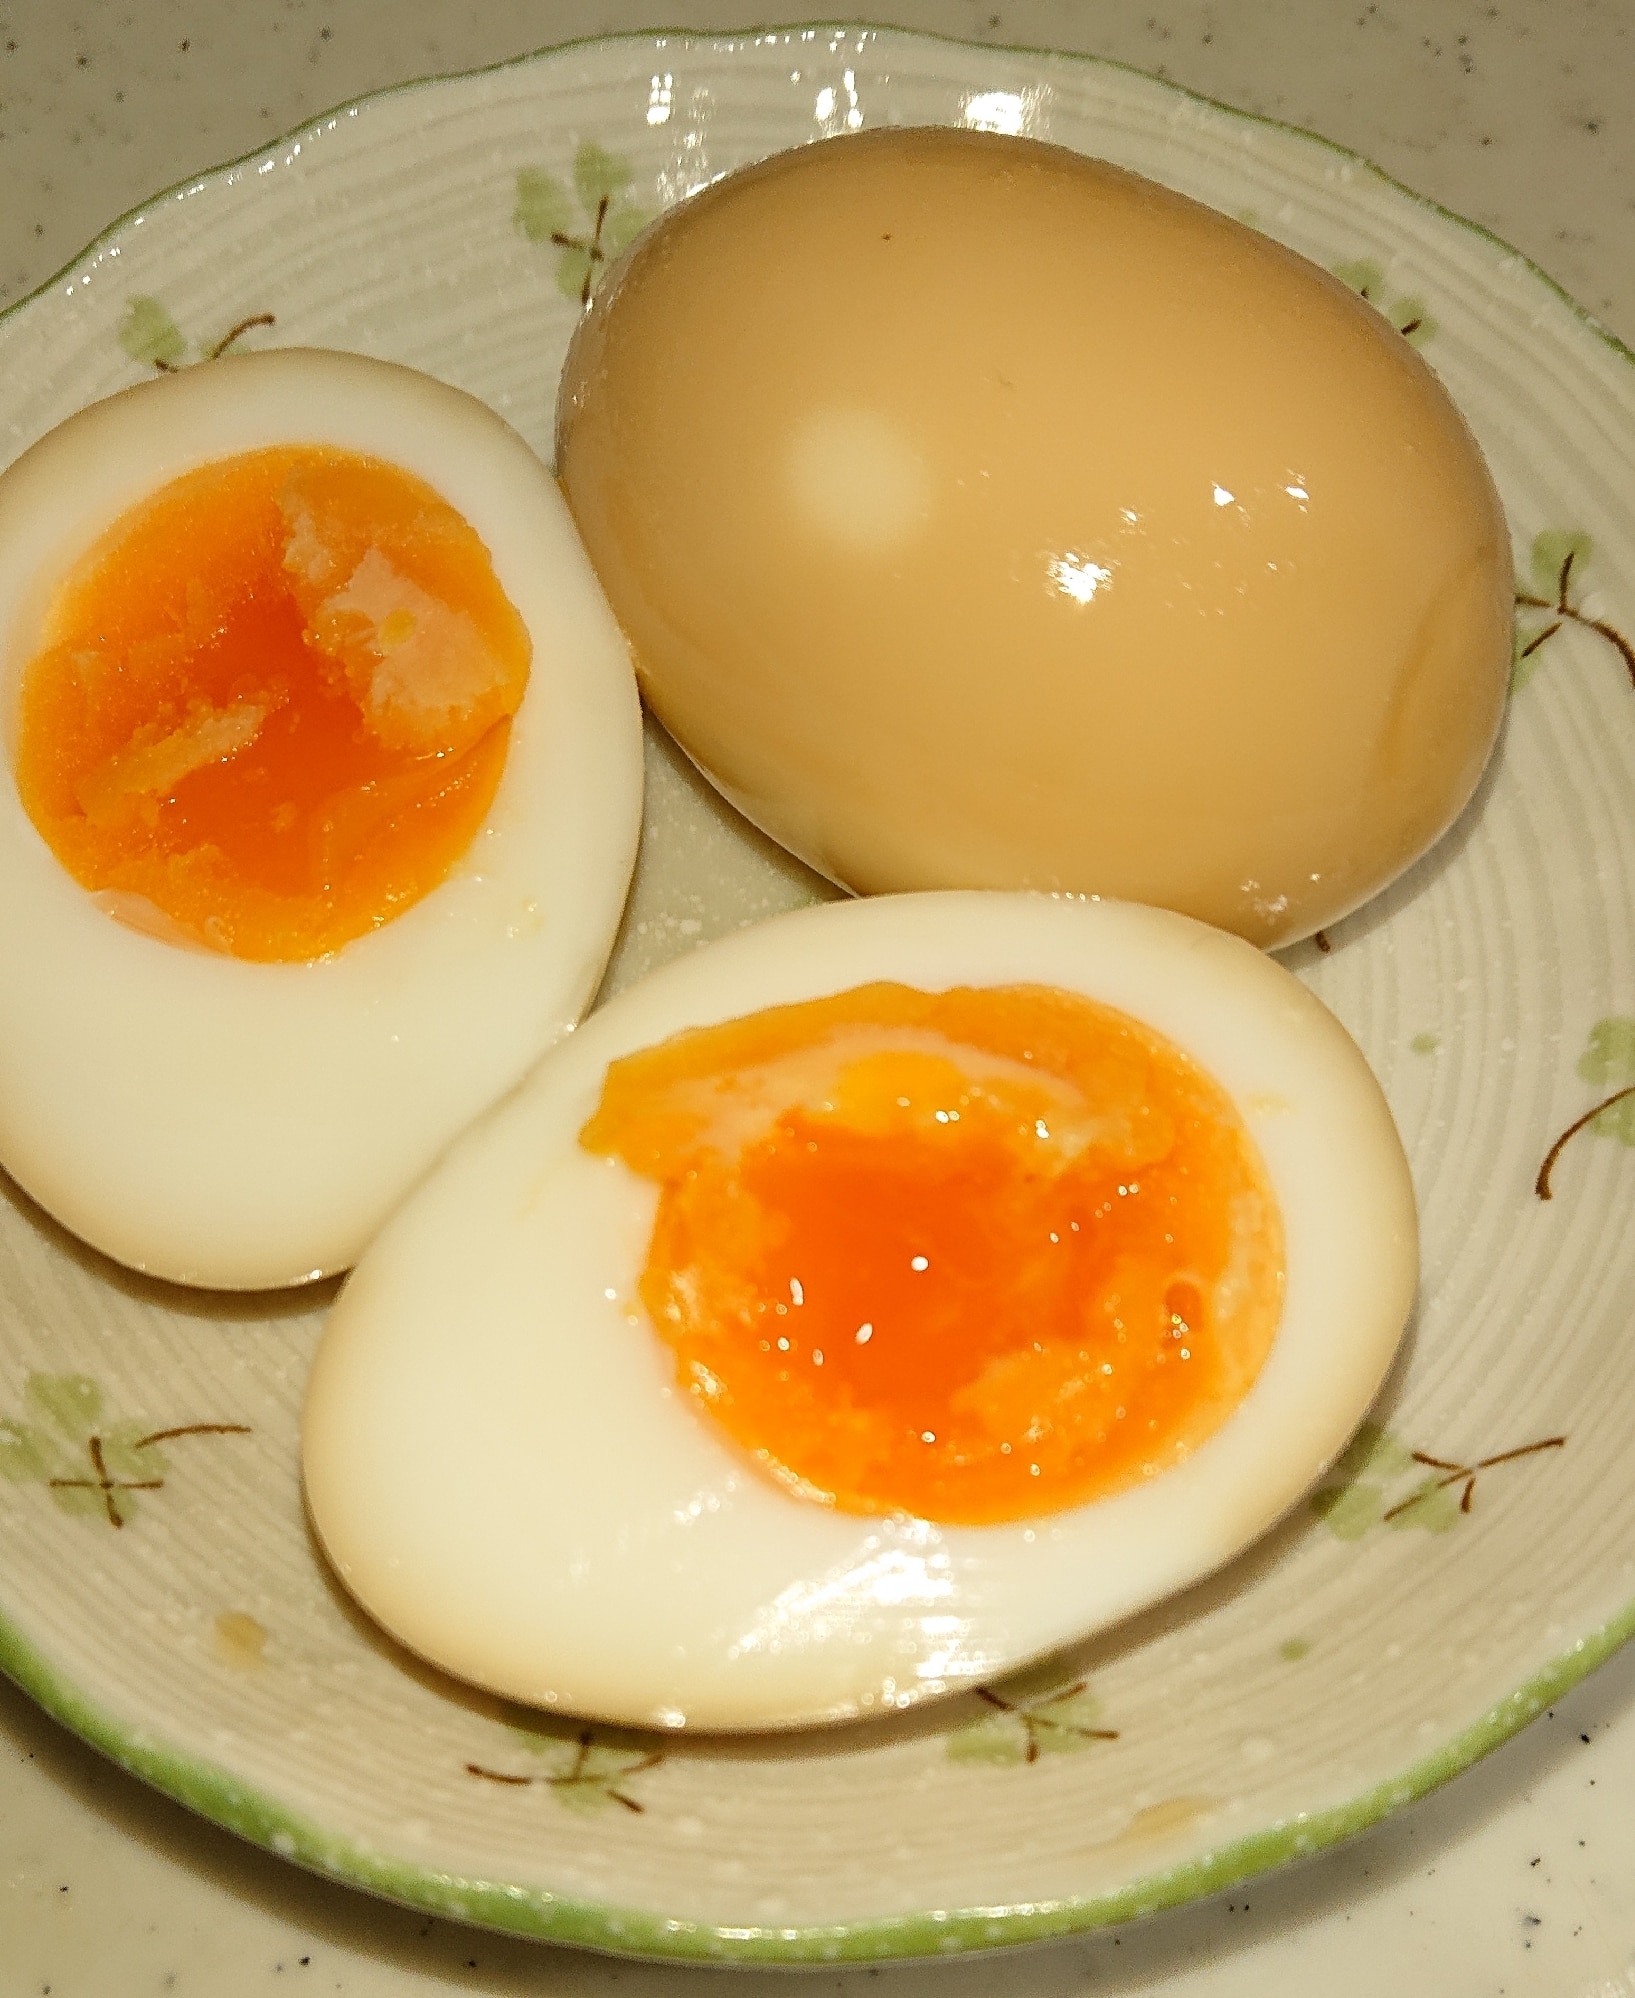 市場 燻製卵 のし 高級贈答用の燻製卵 通常よりもより